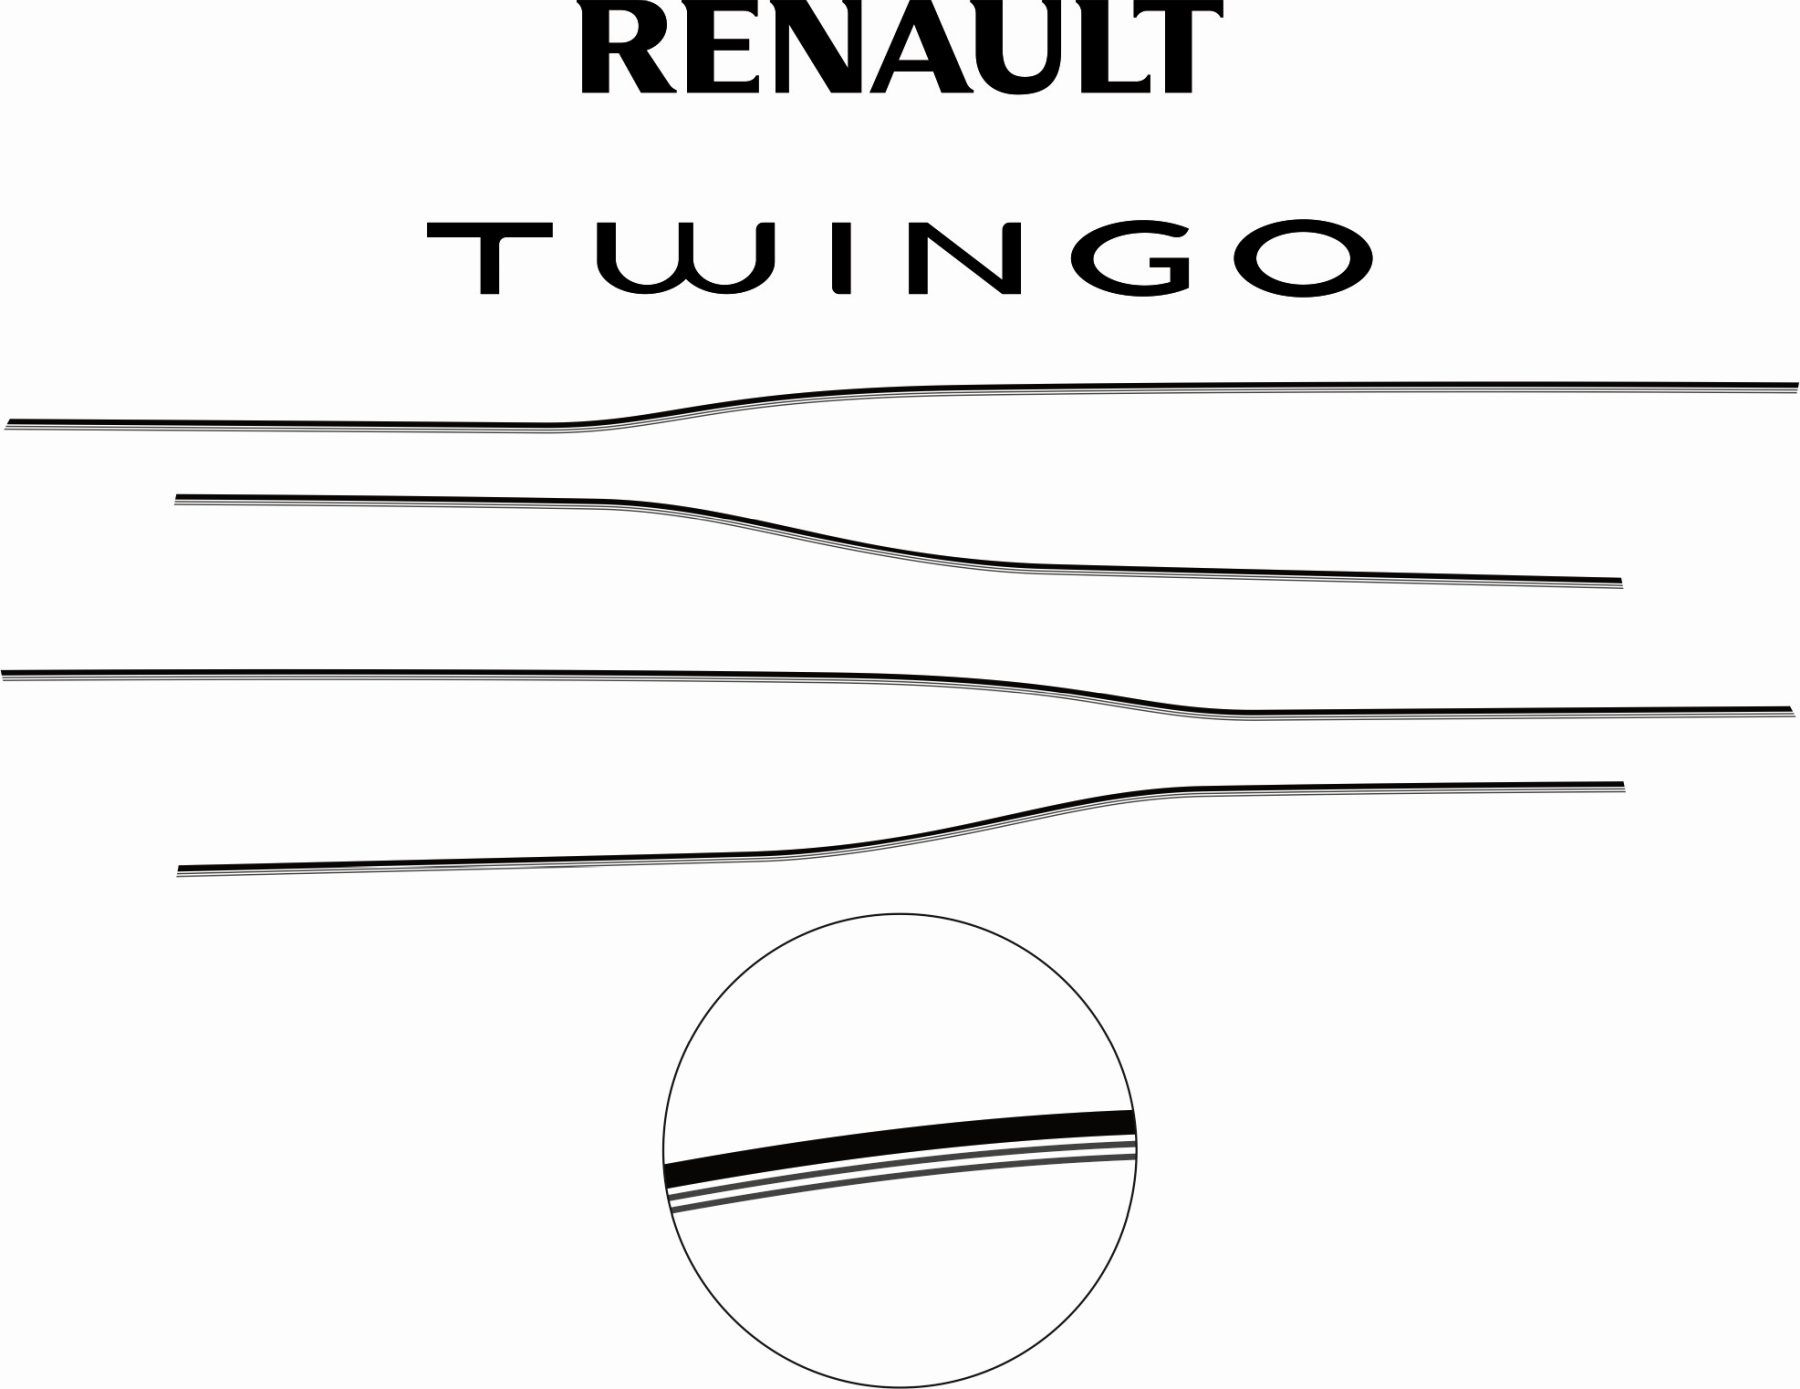 Naklejki tuningowe na samochód Renault Twingo GT sticker decals aufkleber